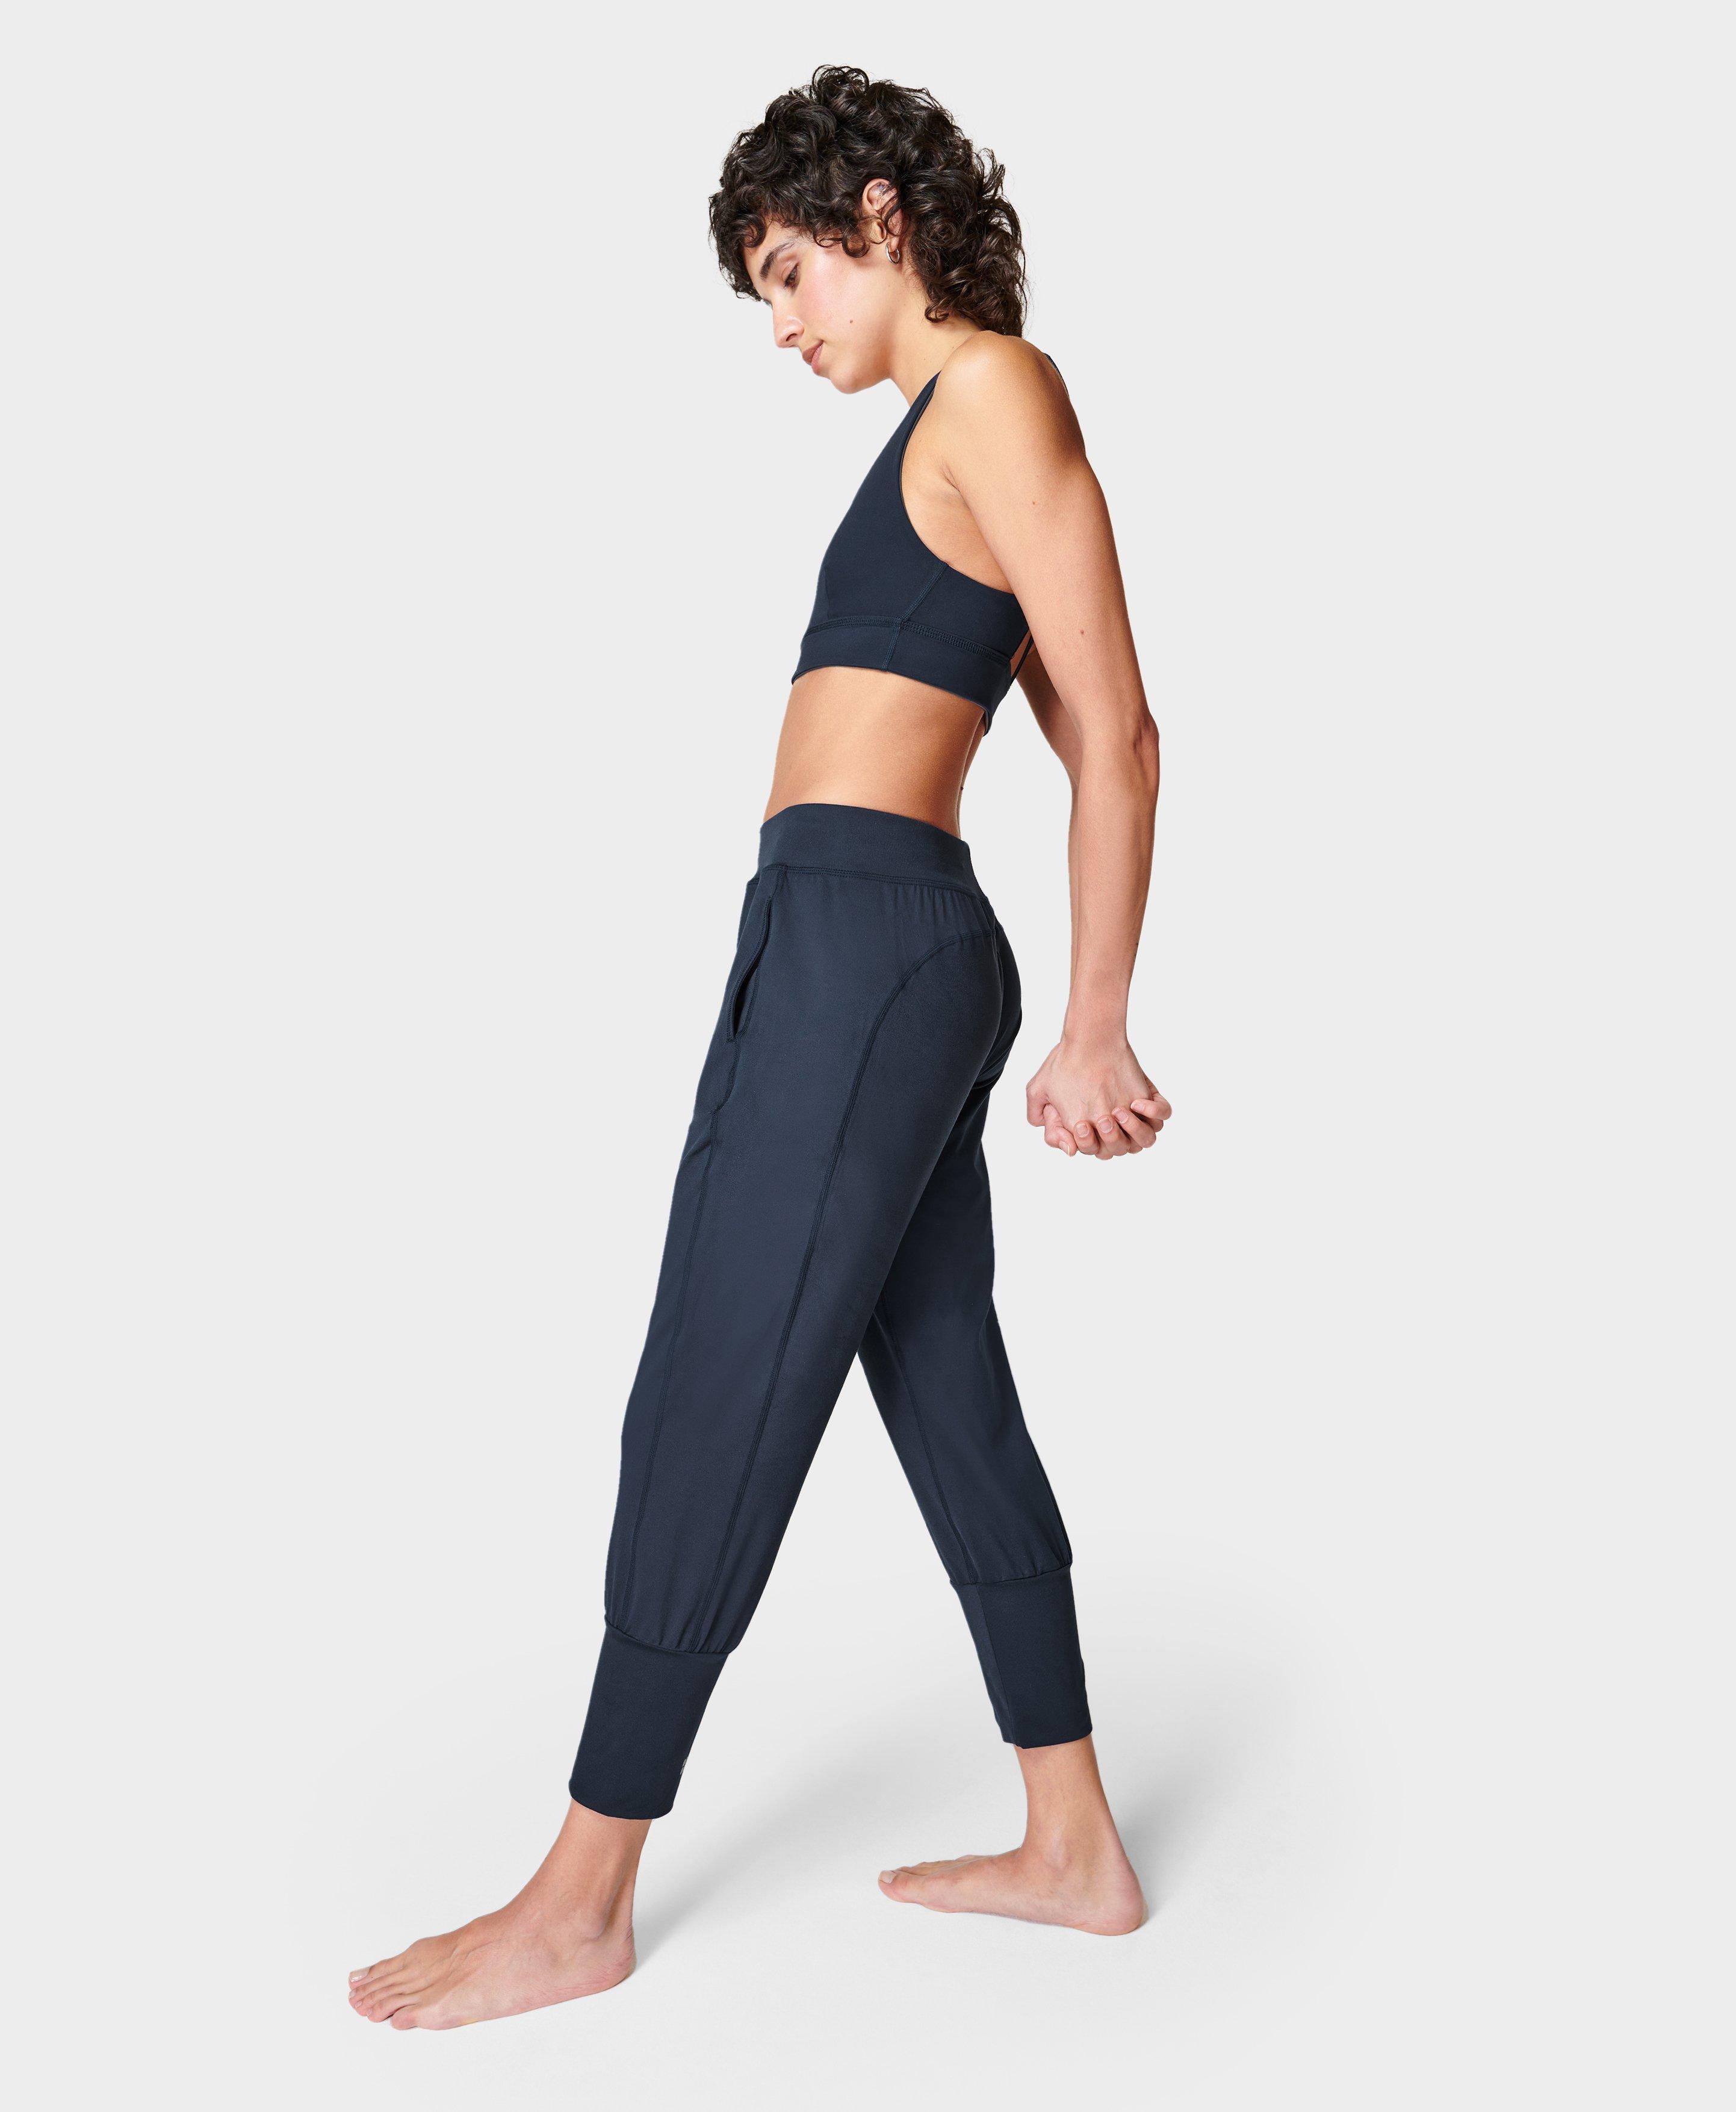 Sweaty Betty Gary Cropped Yoga Pants